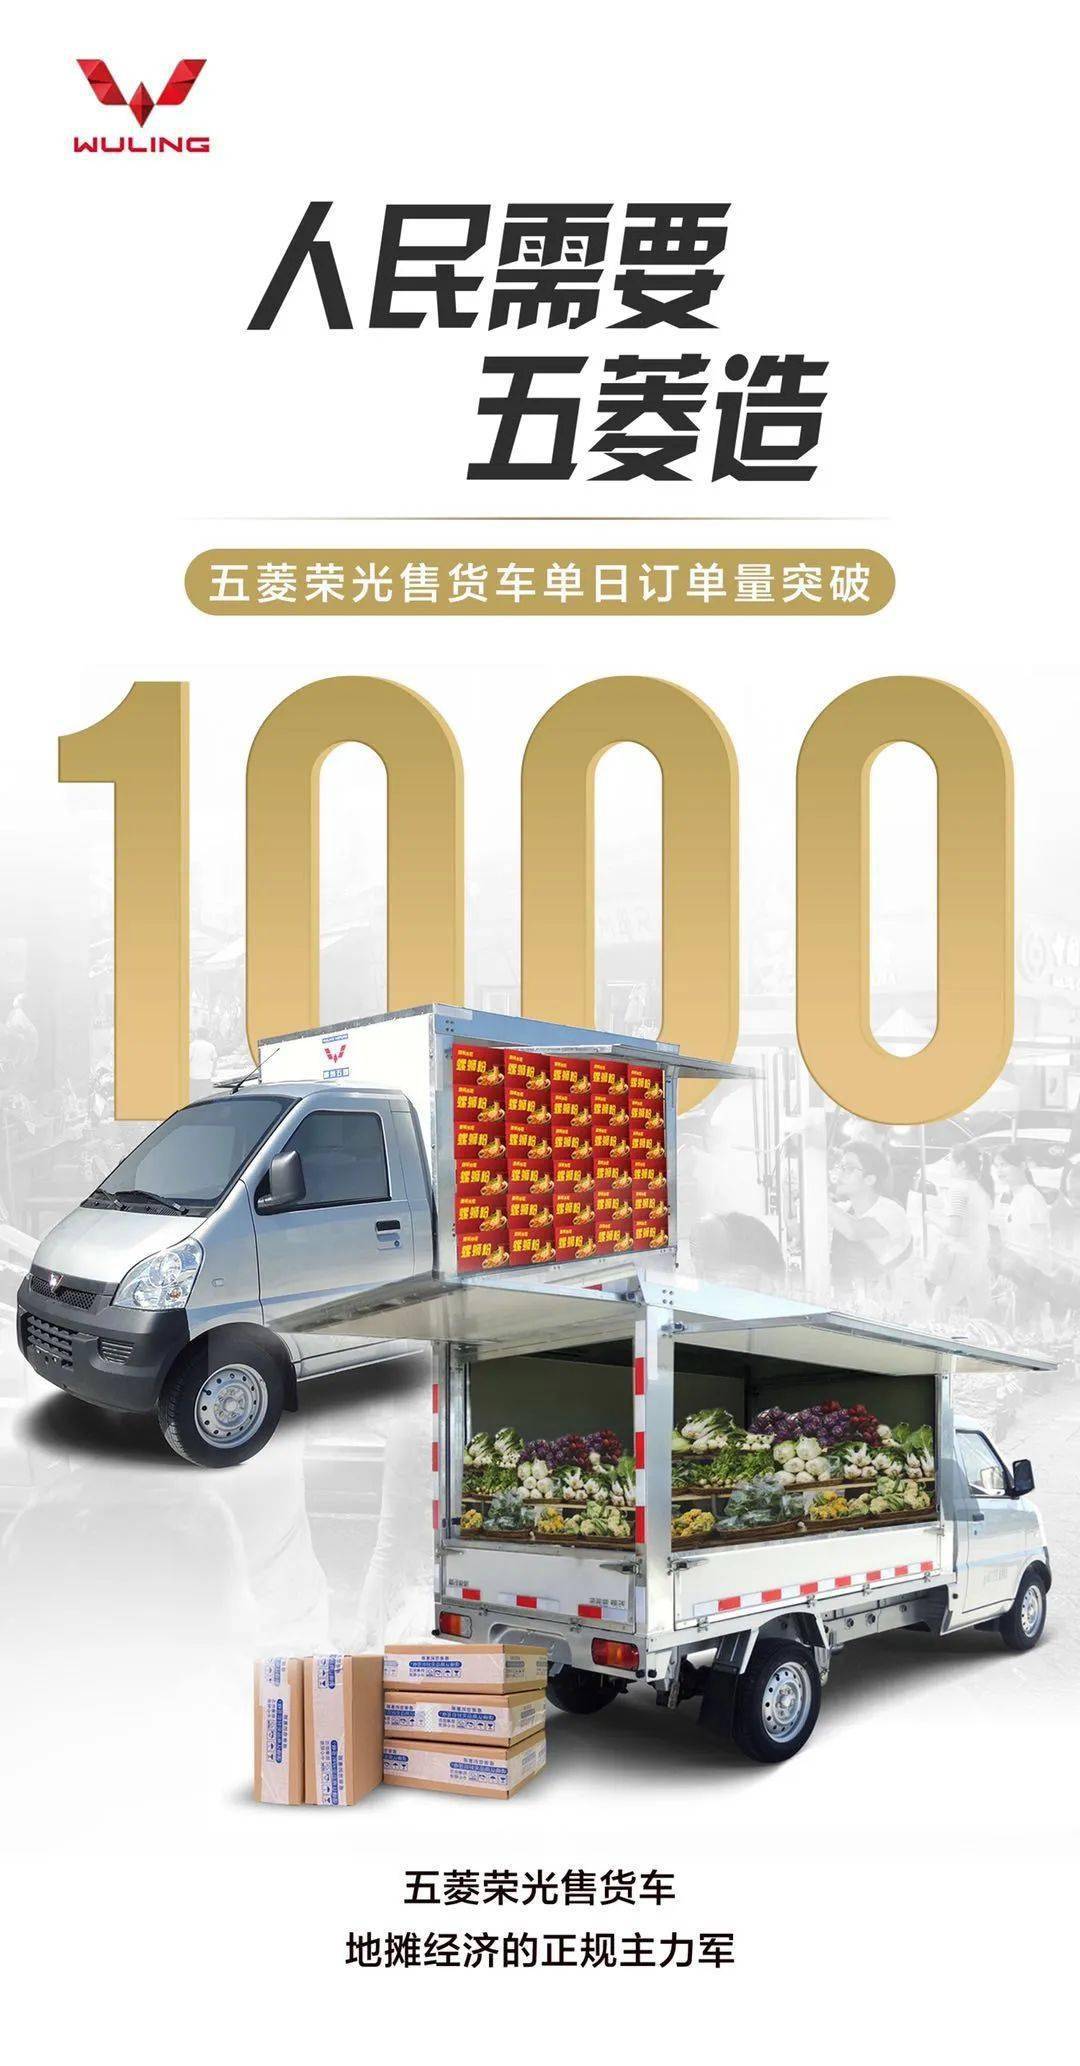 引爆创业新风口，五菱荣光售货车单日订单突破1000 台！